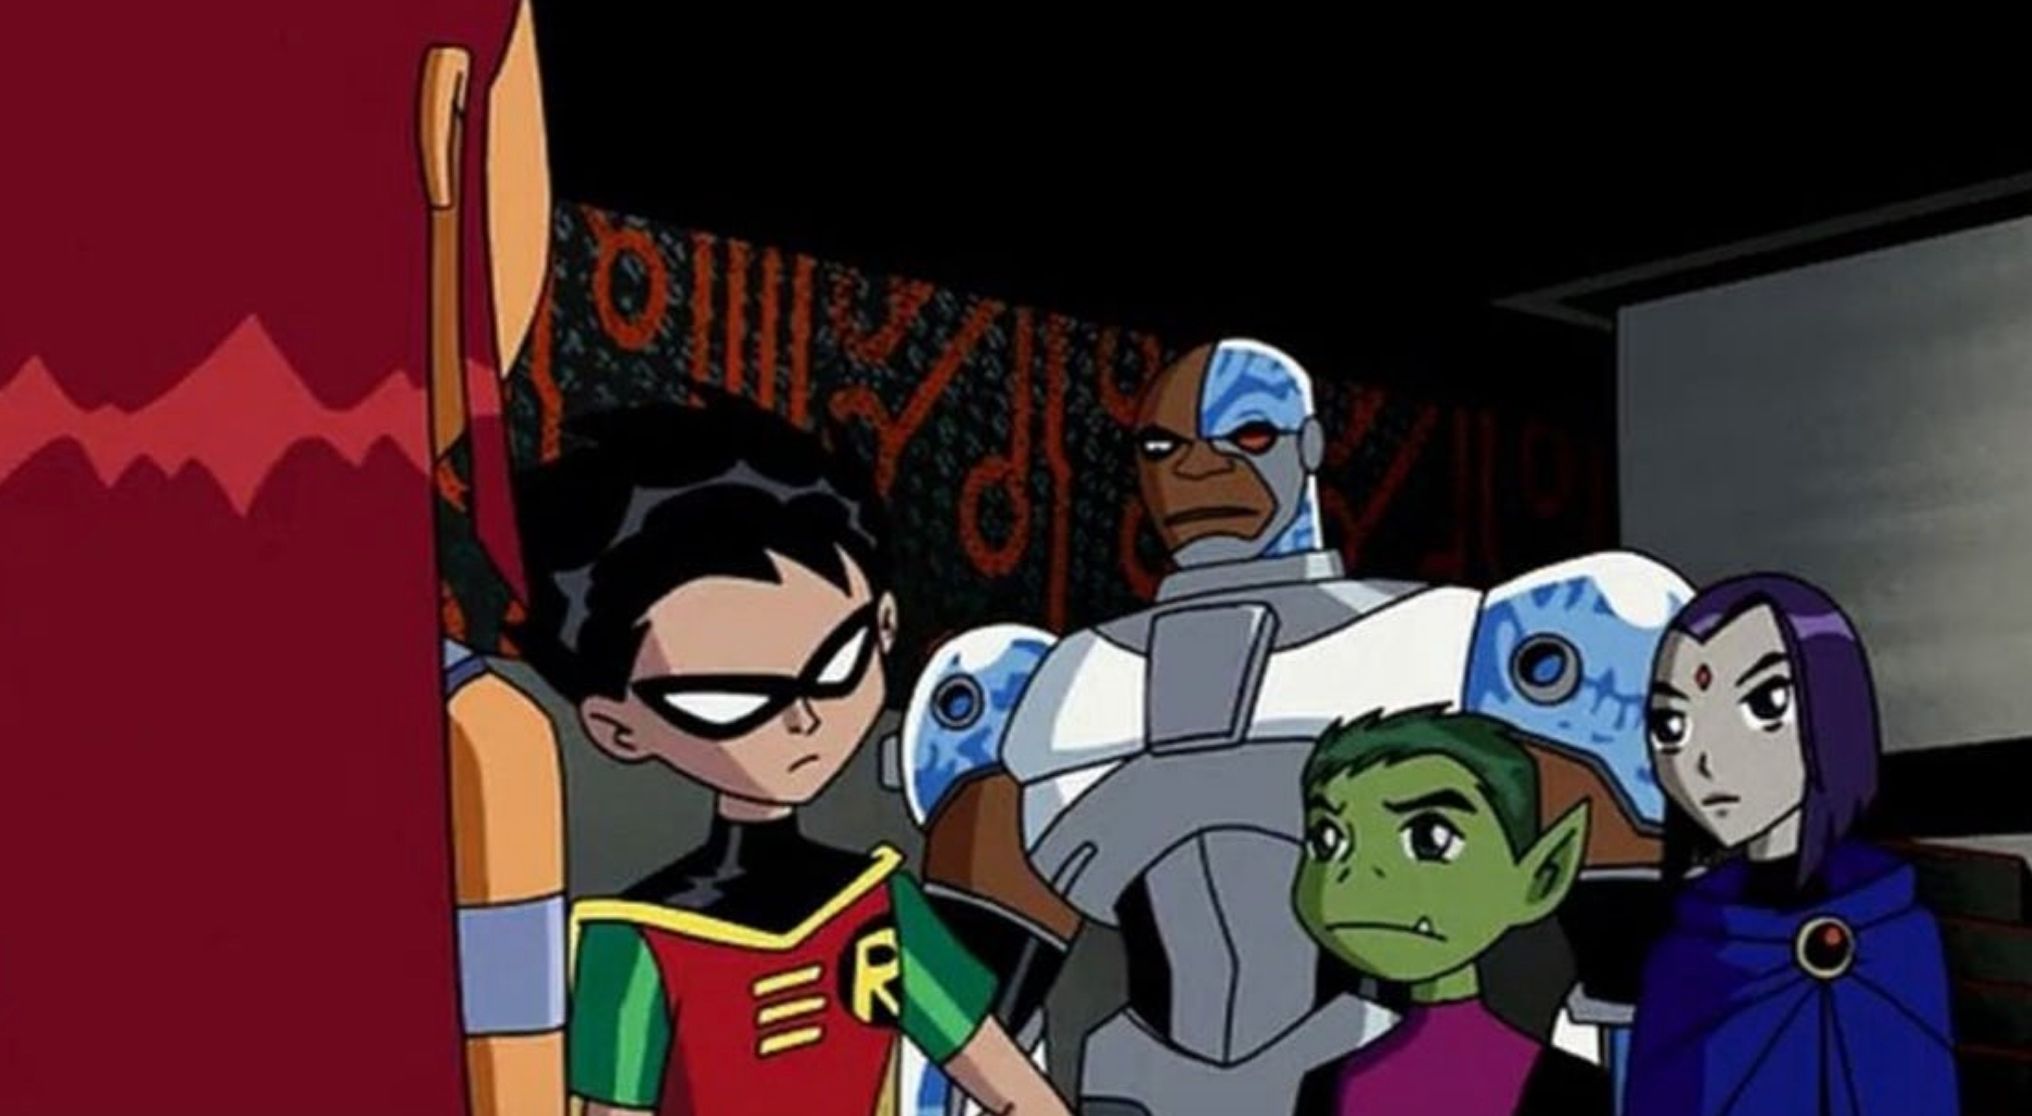 Lista dos Jovens Titãs, incluindo Starfire Robin Cyborg Beast Boy e Raven olhando um para o outro